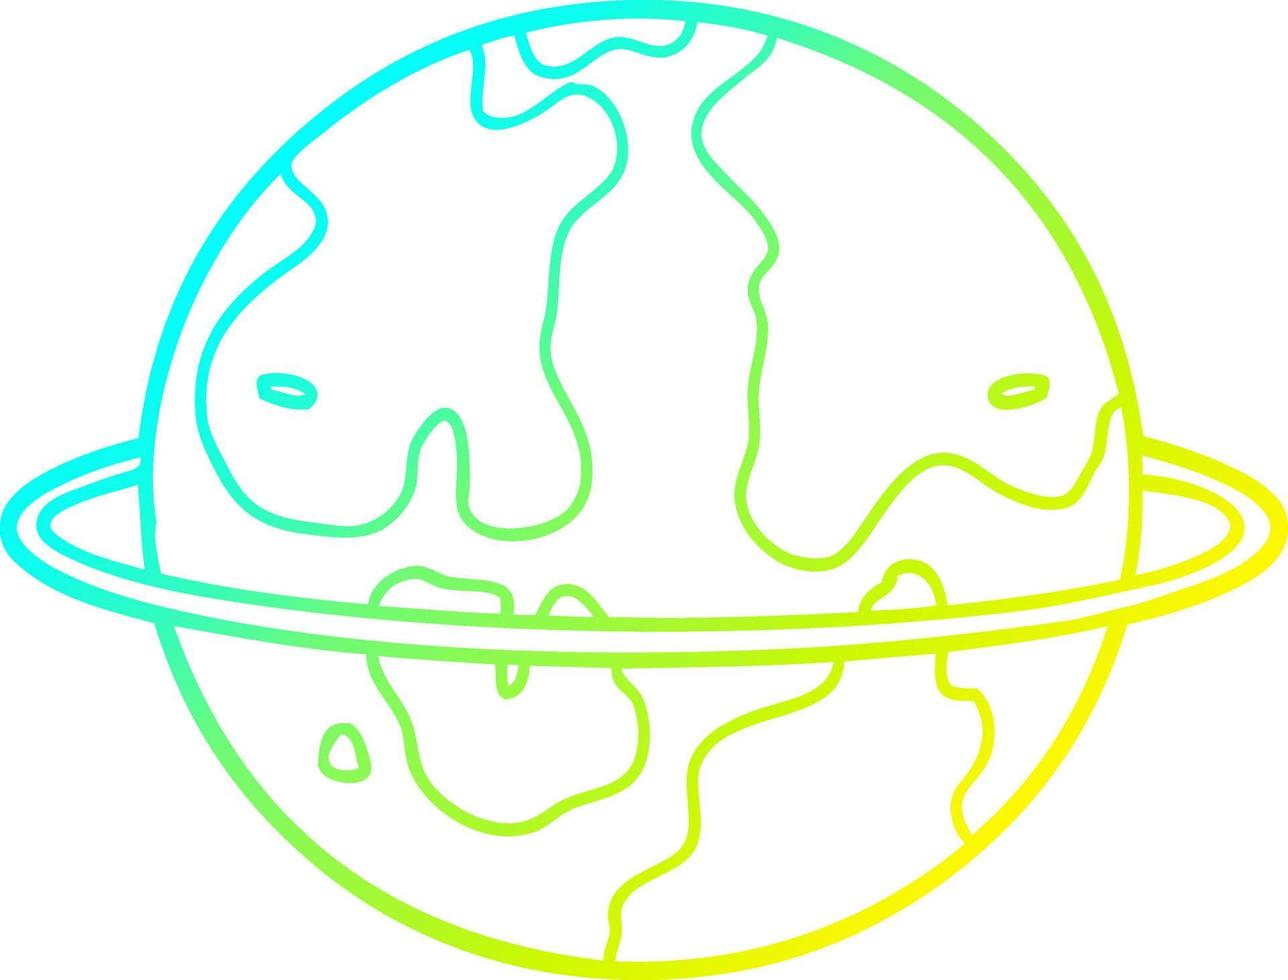 Kalte Gradientenlinie Zeichnung Cartoon Alien Planet vektor